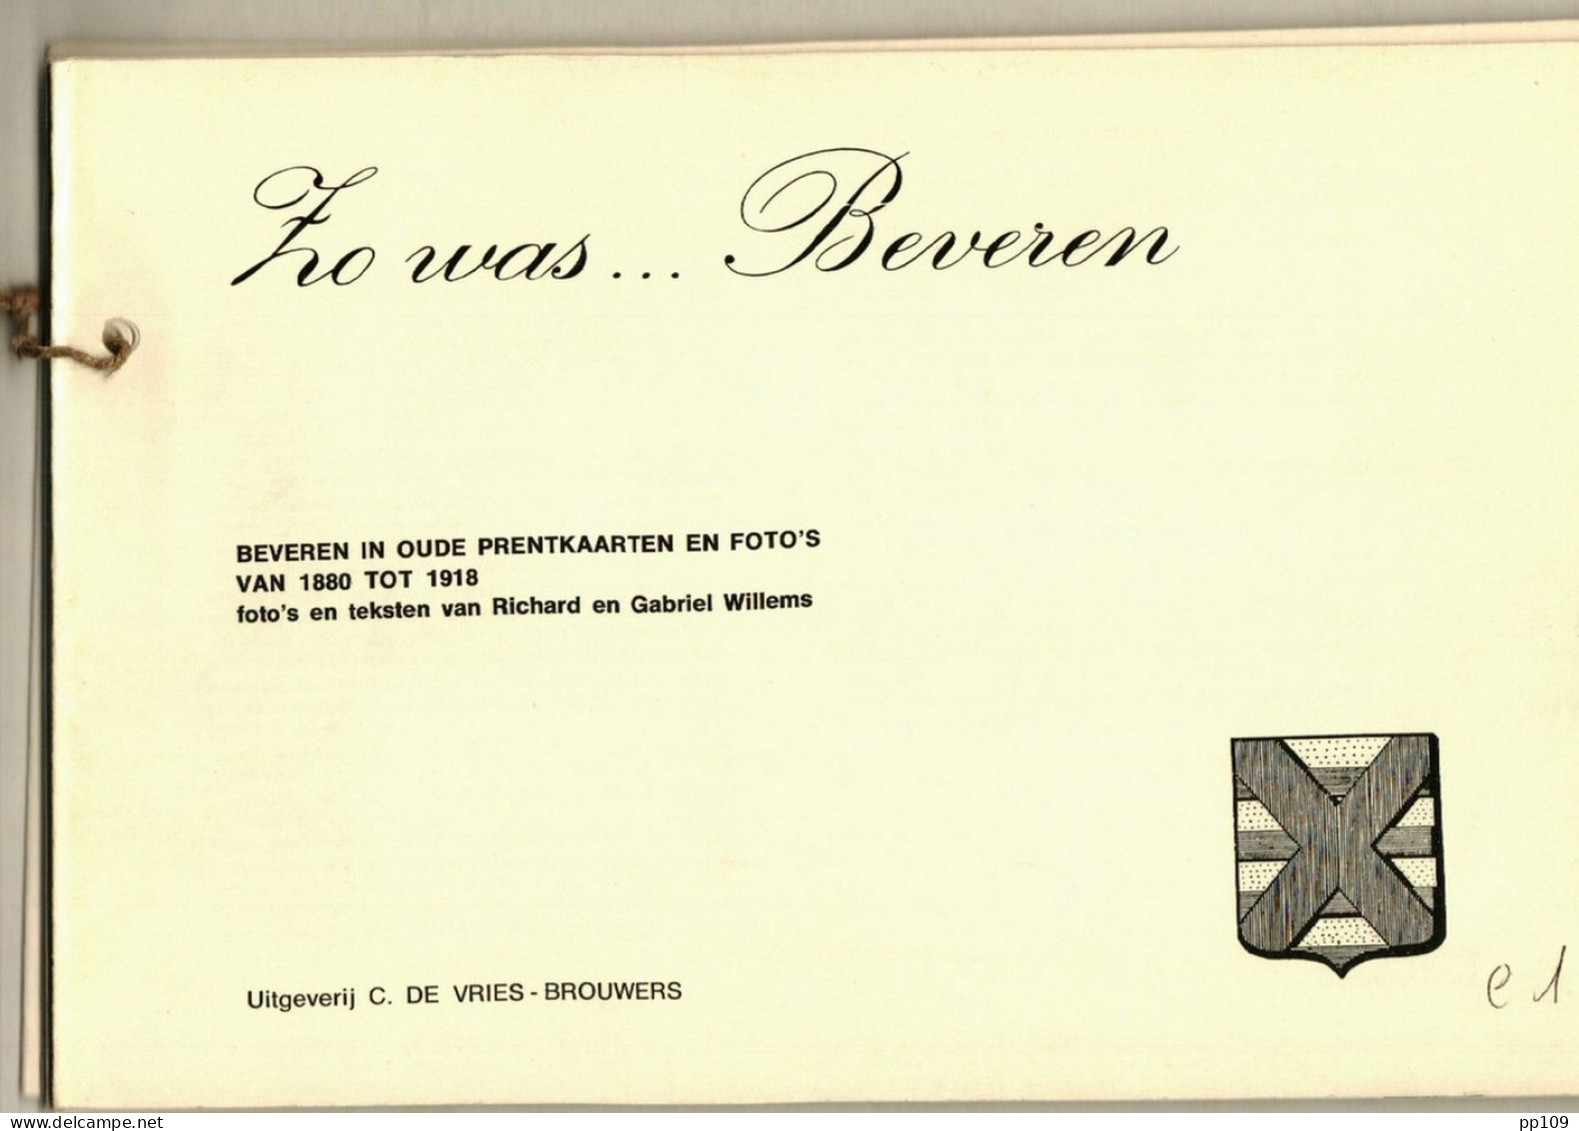 ZO WAS ... BEVEREN 76 BZ Postkaarten Oude Foto's + Text - épreuve D'édition Editie Test - Uitg. DE VRIES BROUWERS - Boeken & Catalogi